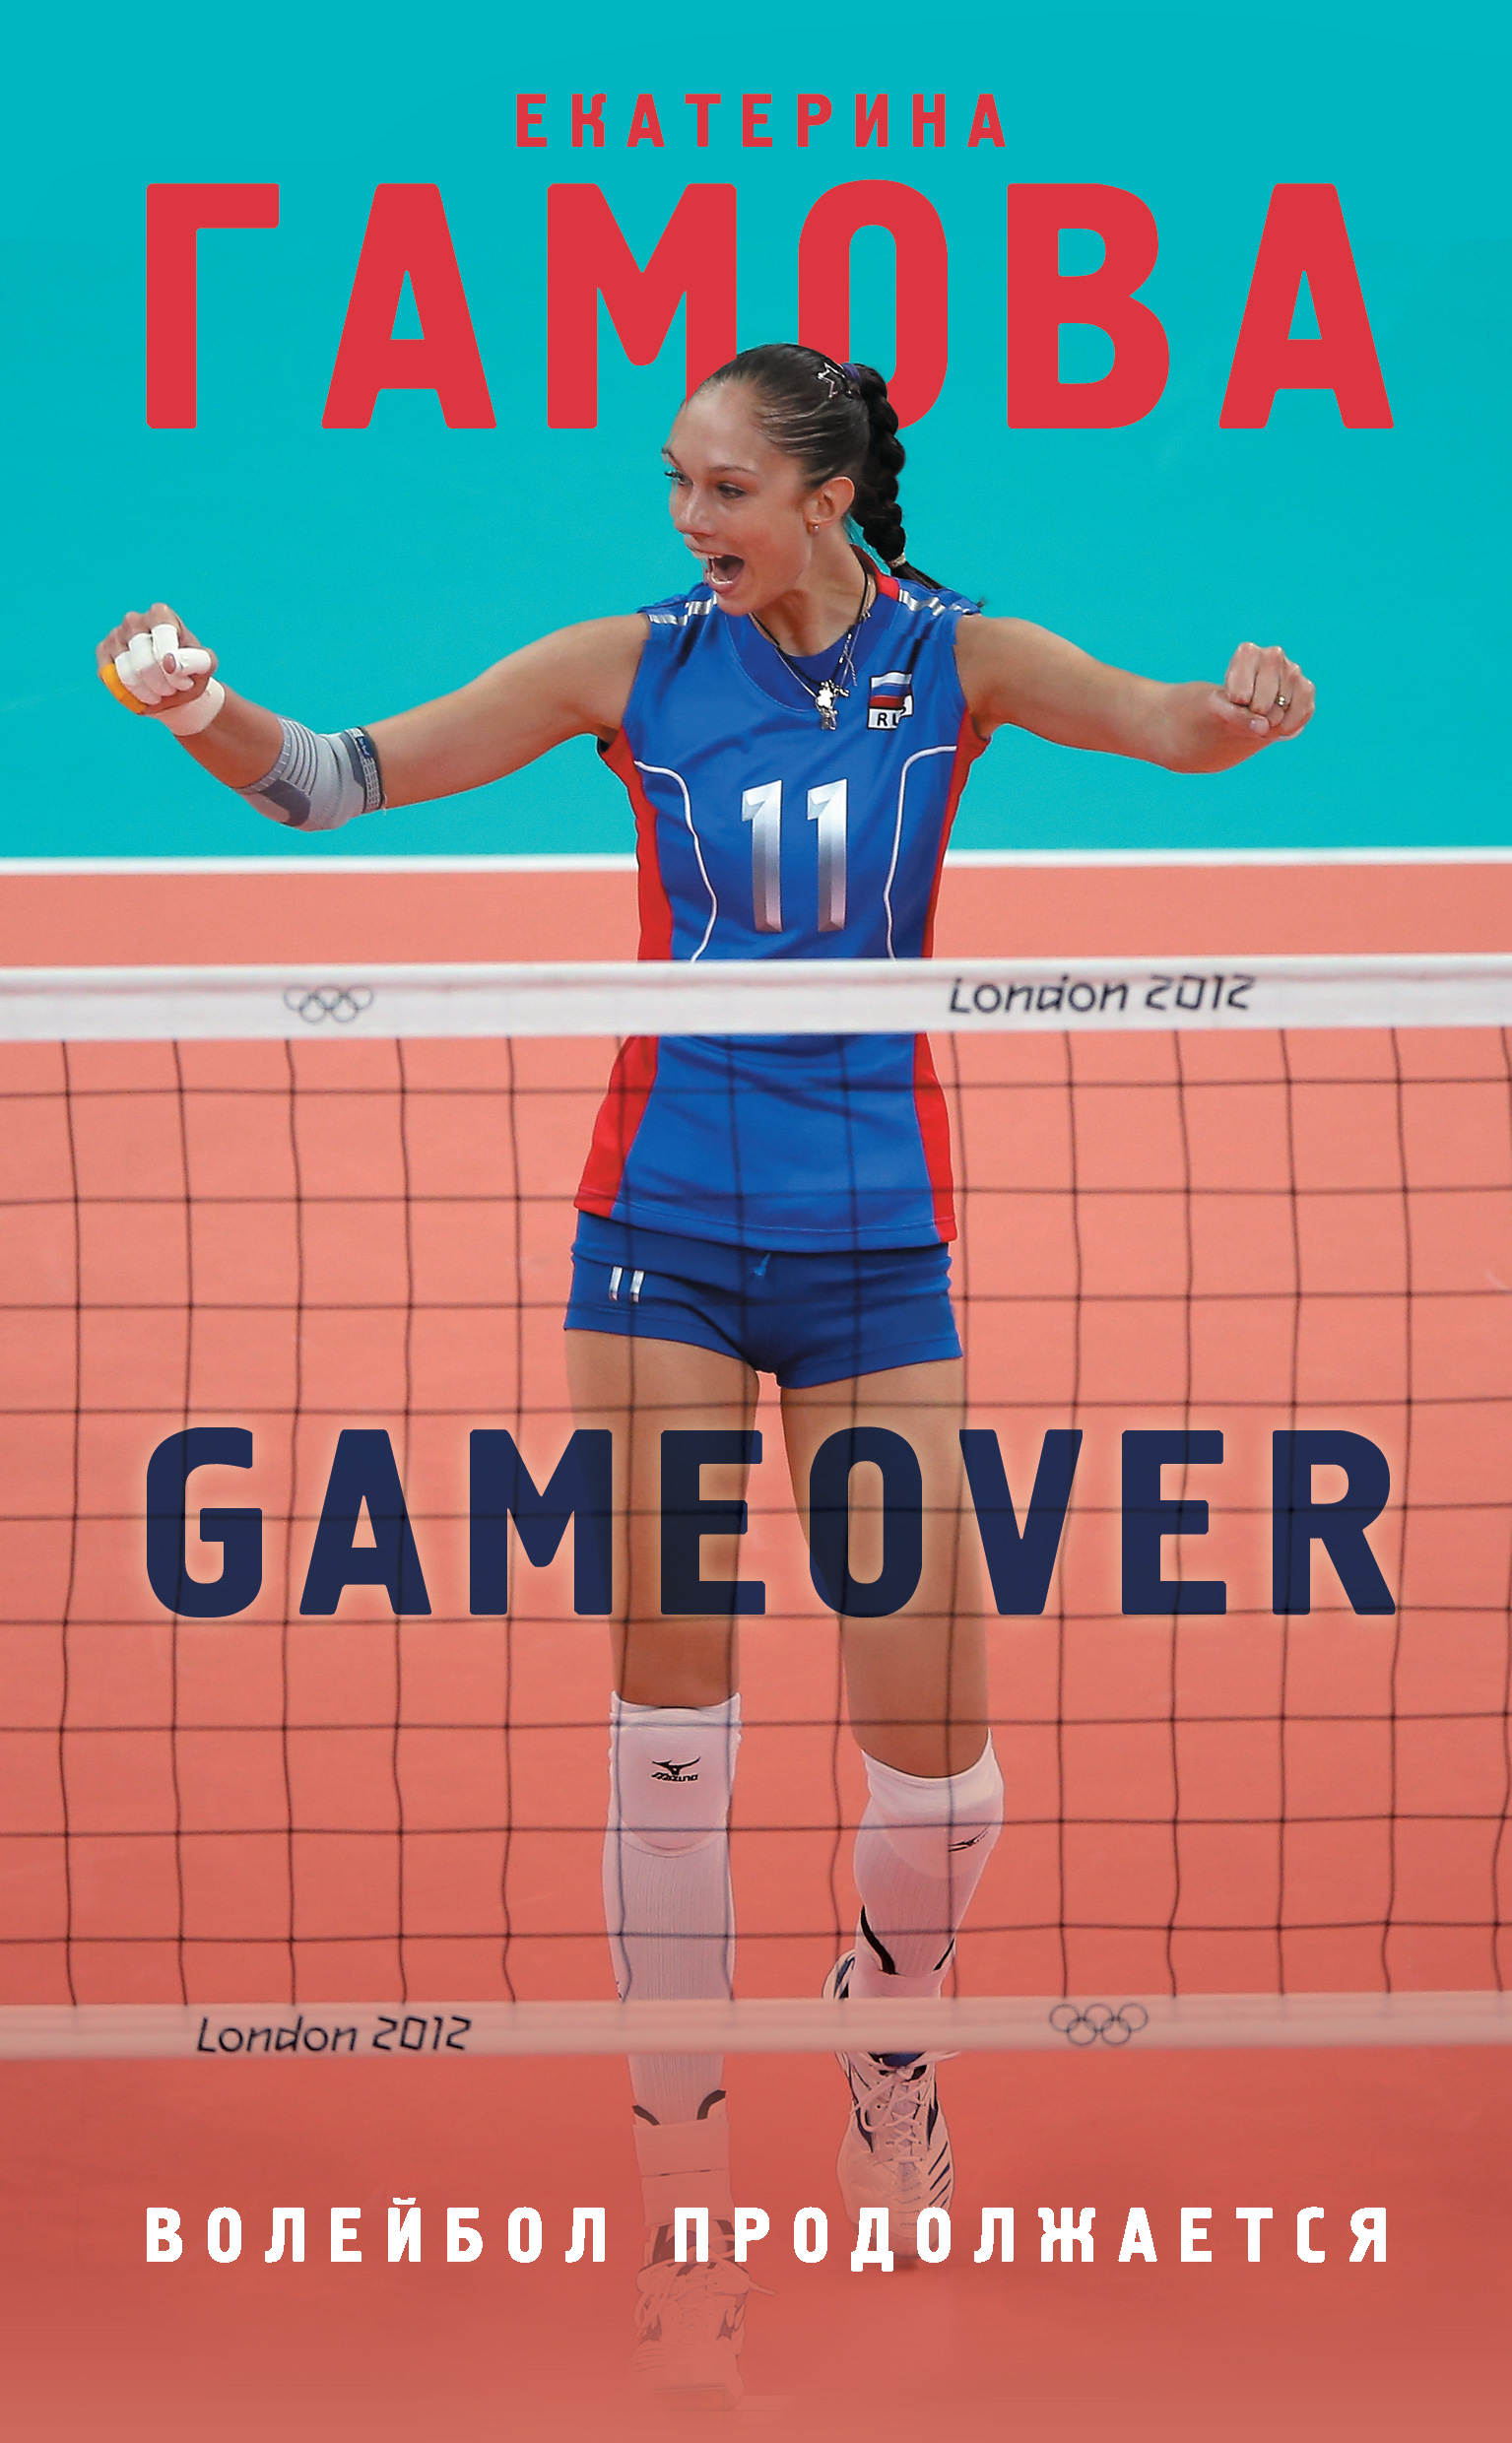 Книга Game Over. Волейбол продолжается из серии , созданная Екатерина Гамова, может относится к жанру Биографии и Мемуары, Спорт, фитнес. Стоимость электронной книги Game Over. Волейбол продолжается с идентификатором 25557005 составляет 299.00 руб.